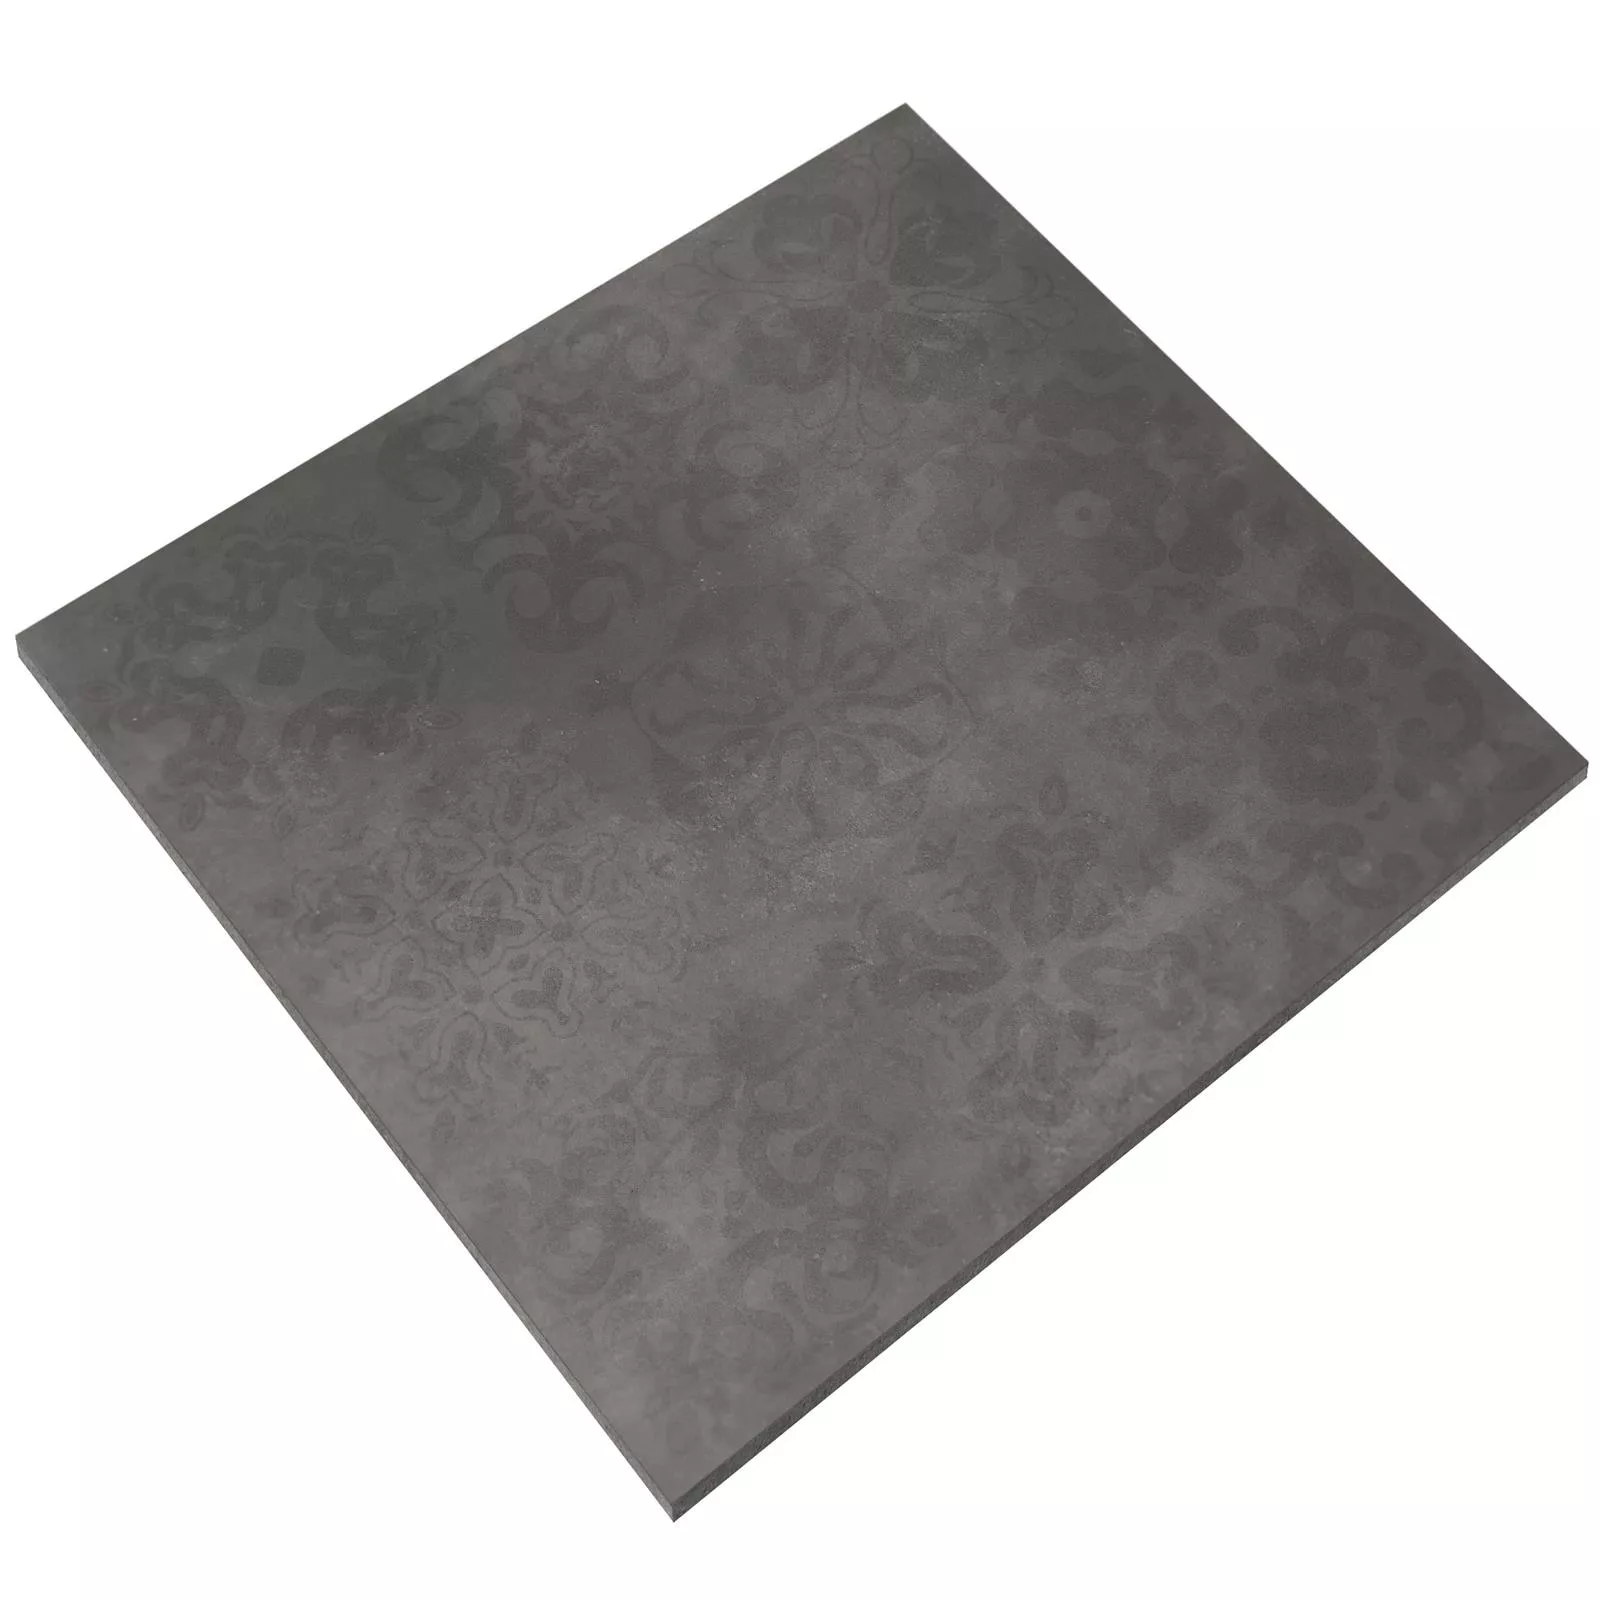 Échantillon Carrelage Sol Et Mur Kolossal Rectifié R10/B Anthracite 60x60x0,7cm Décor